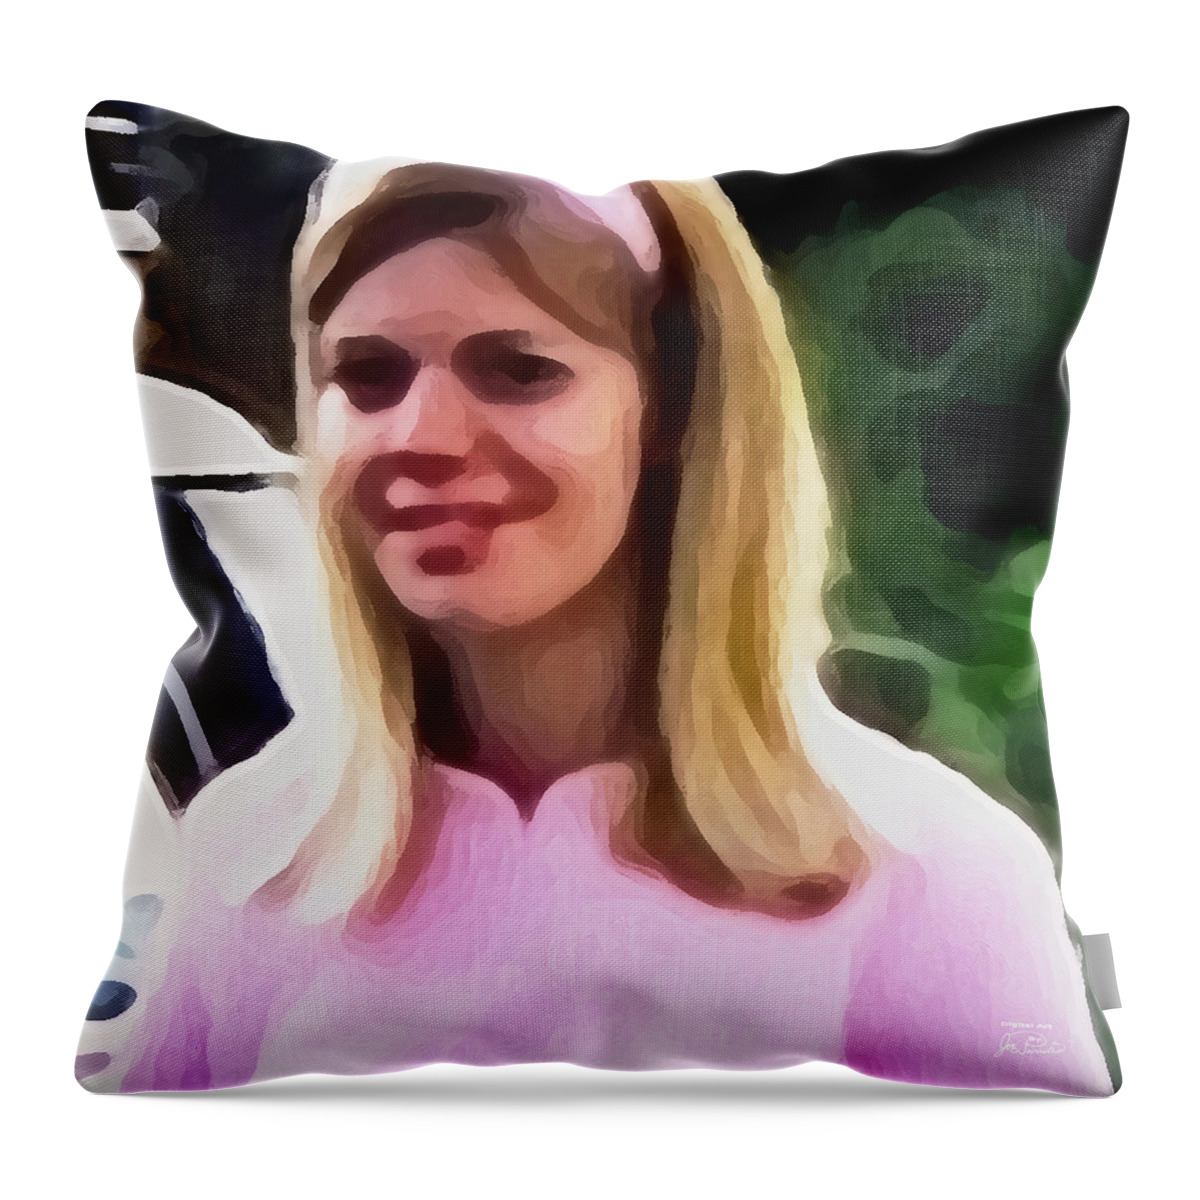 Wife Throw Pillow featuring the digital art Smitten Kitten by Joe Paradis